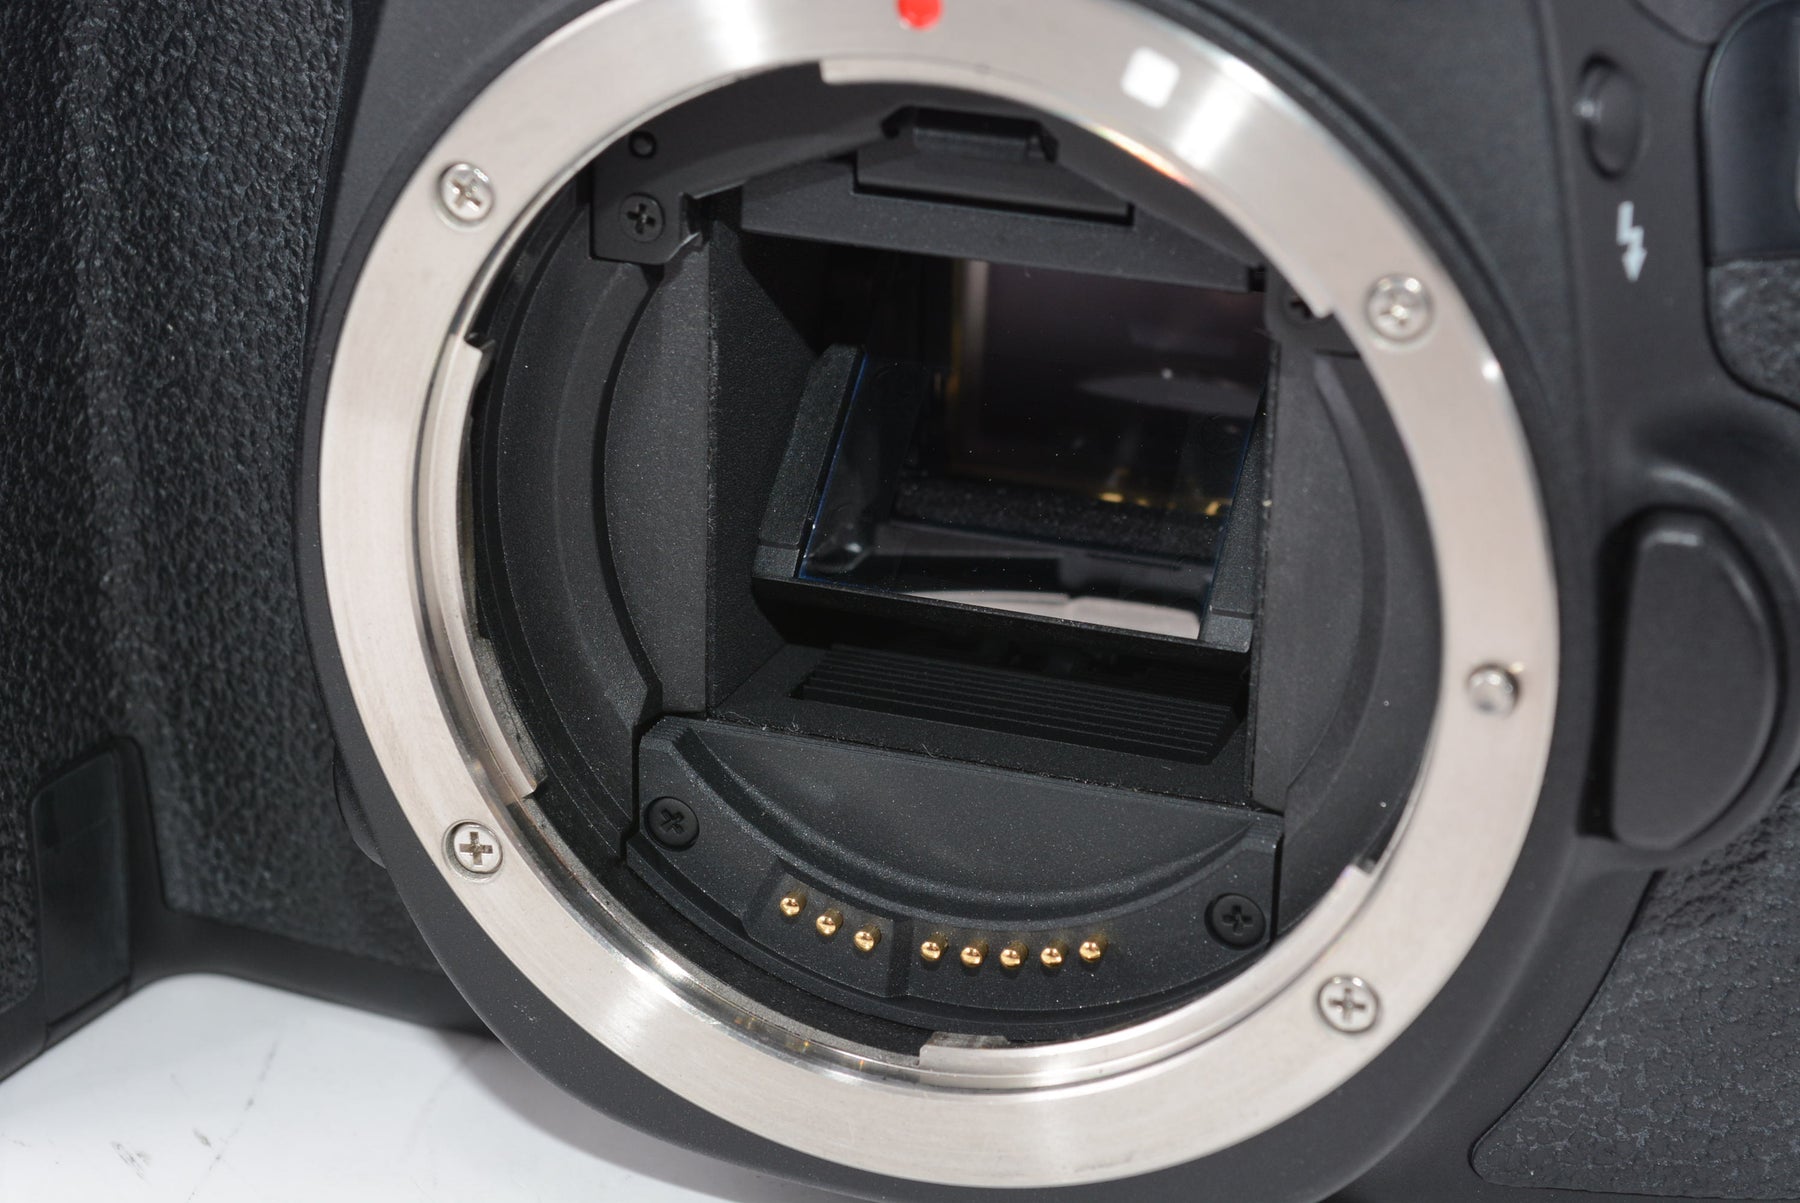 【外観特上級】Canon デジタル一眼レフカメラ EOS 60D ボディ EOS60D